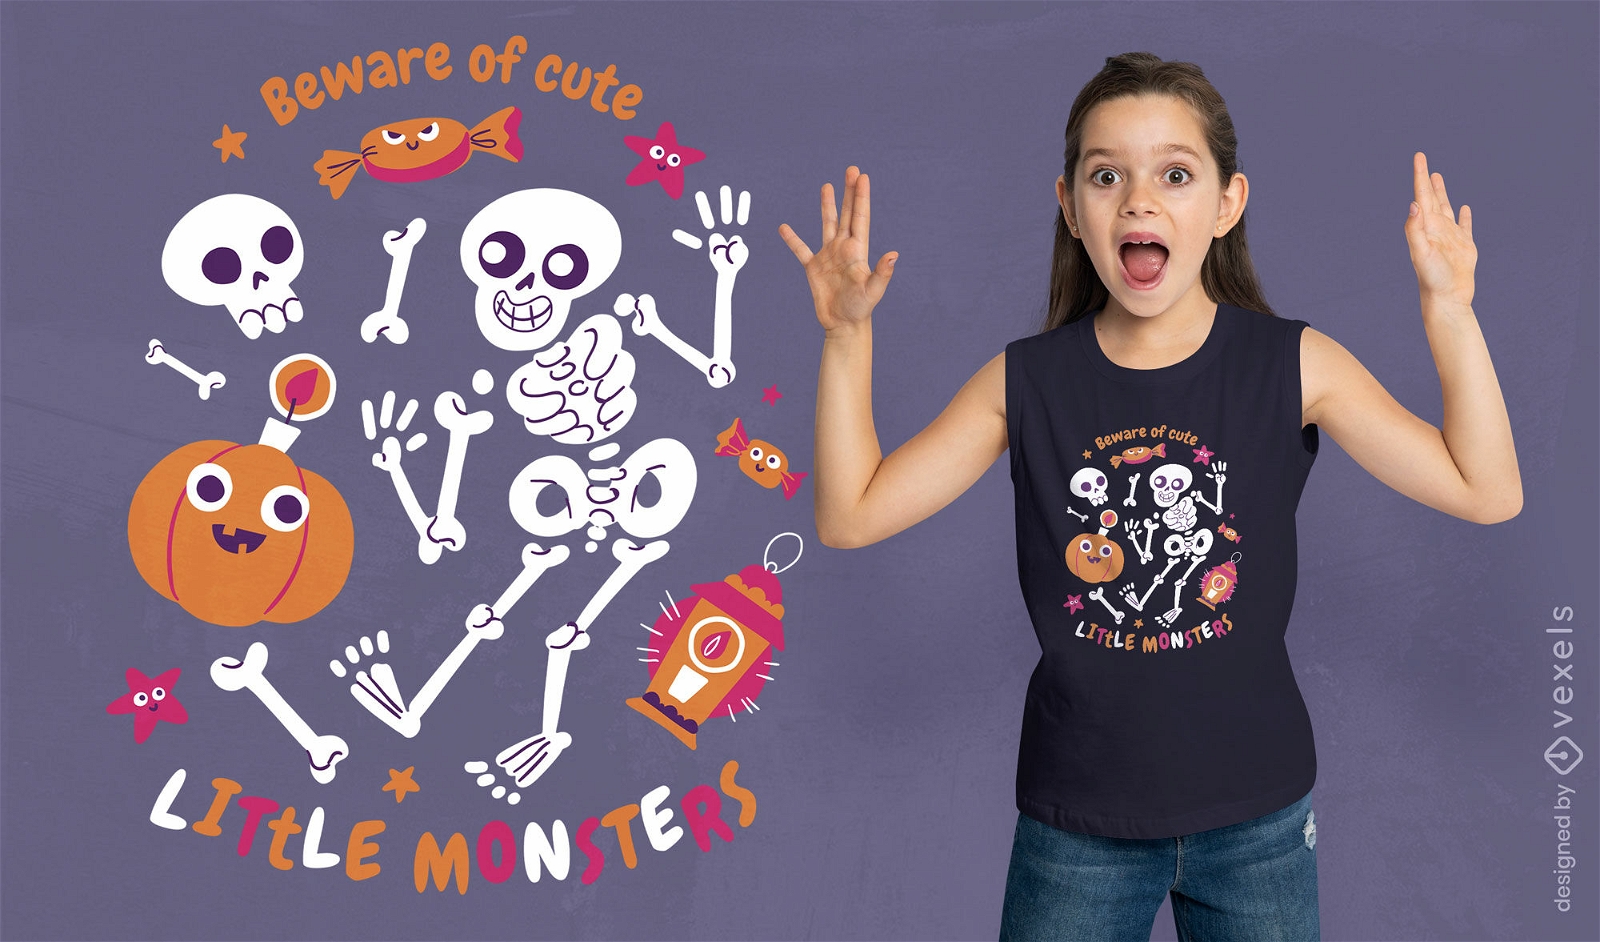 Little monsters halloween t-shirt design